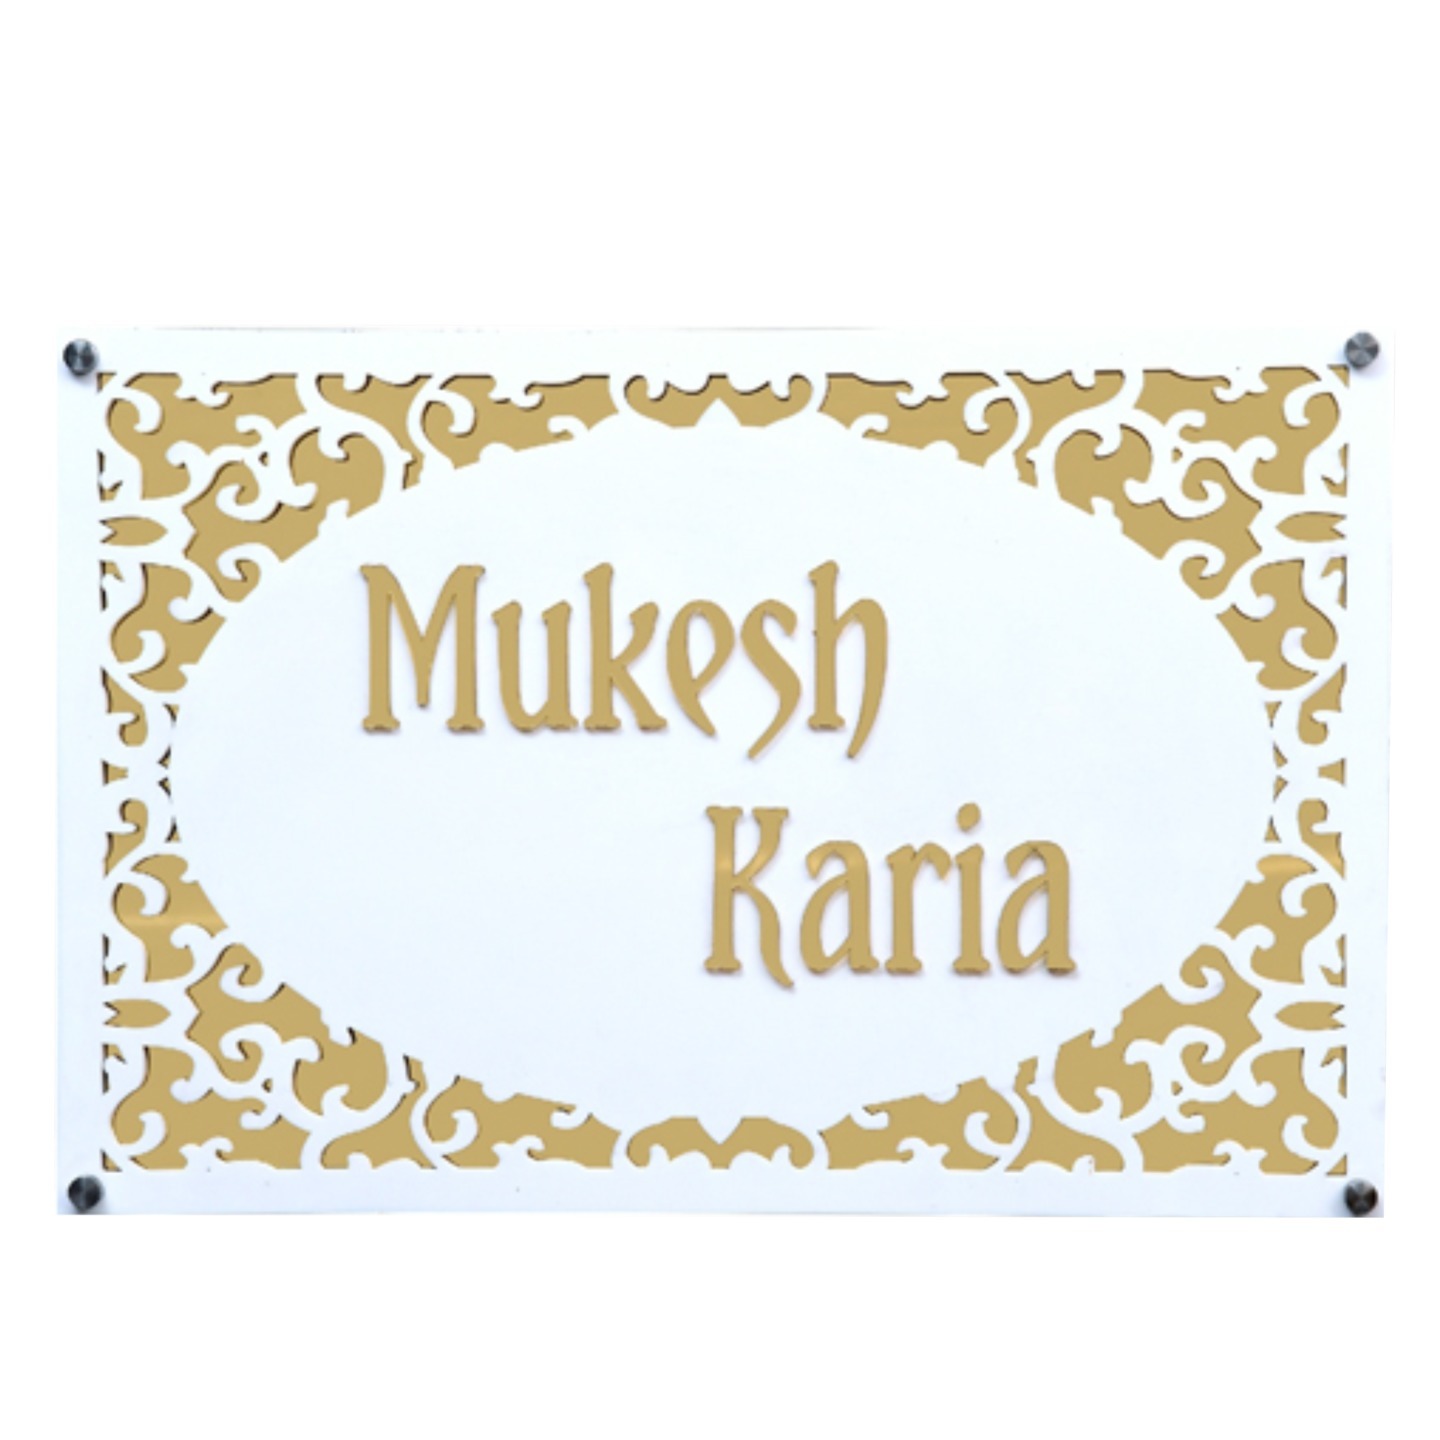 Mukesh Karia